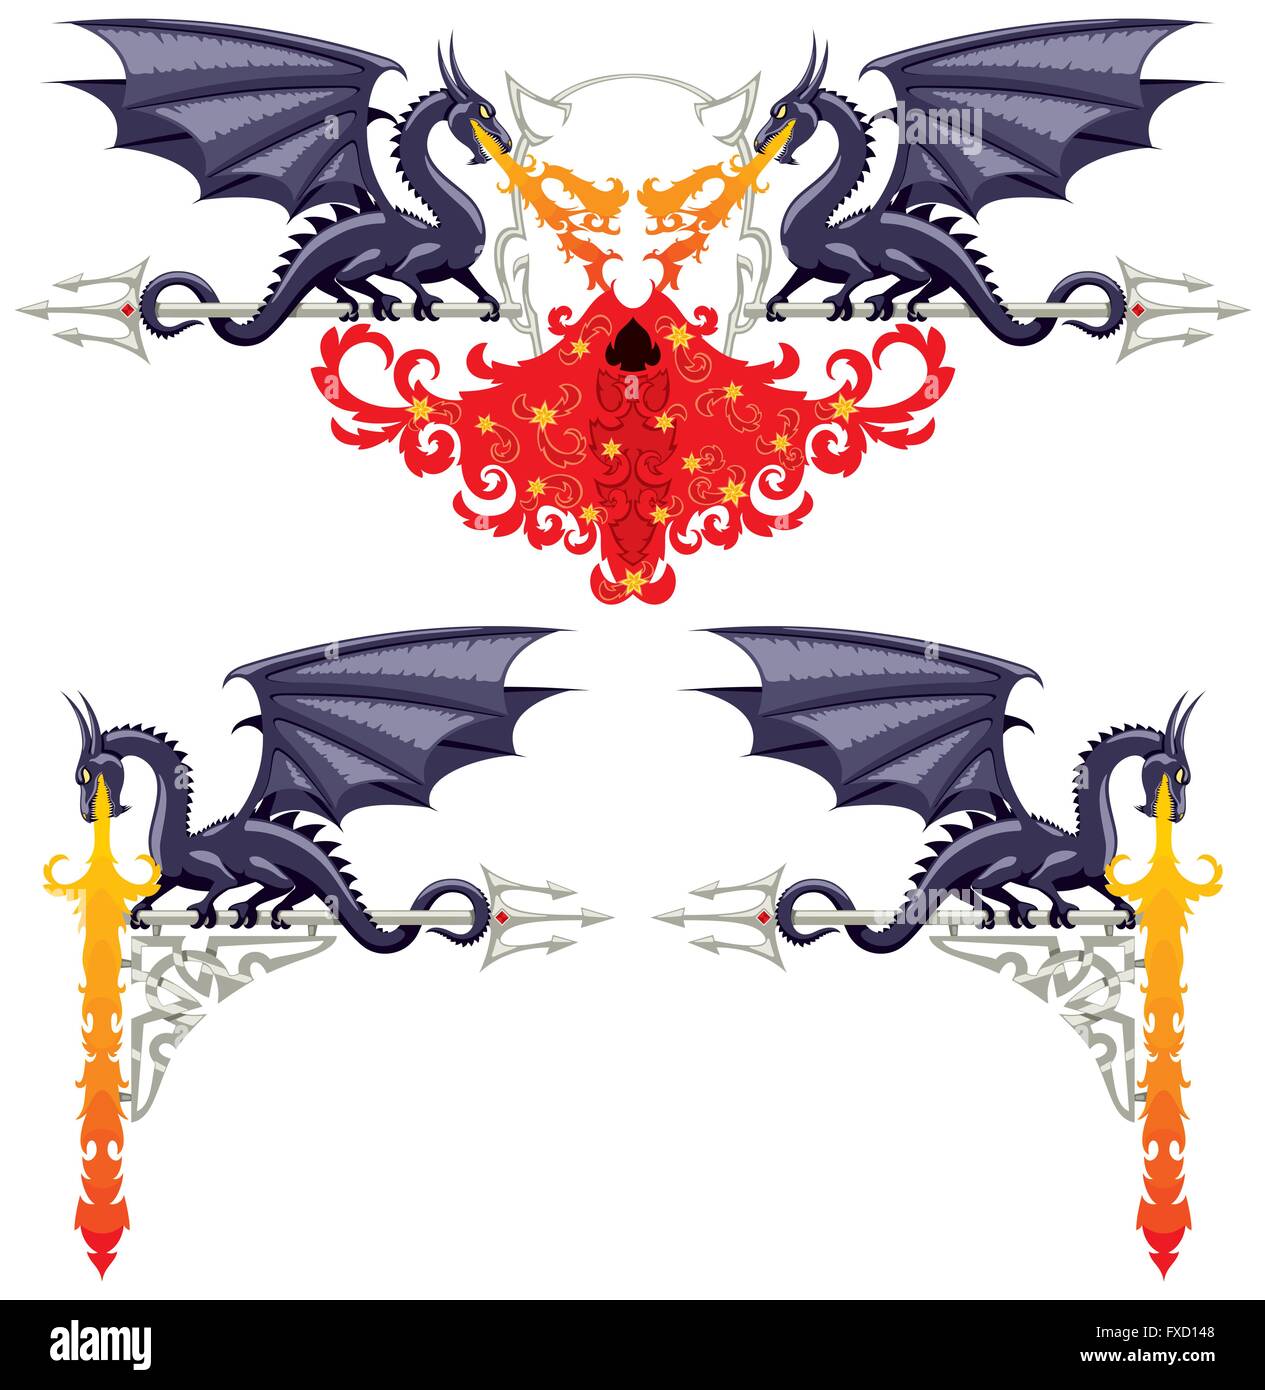 Ornements floraux fantasy avec des dragons, de flammes et d'un diable. Illustration de Vecteur